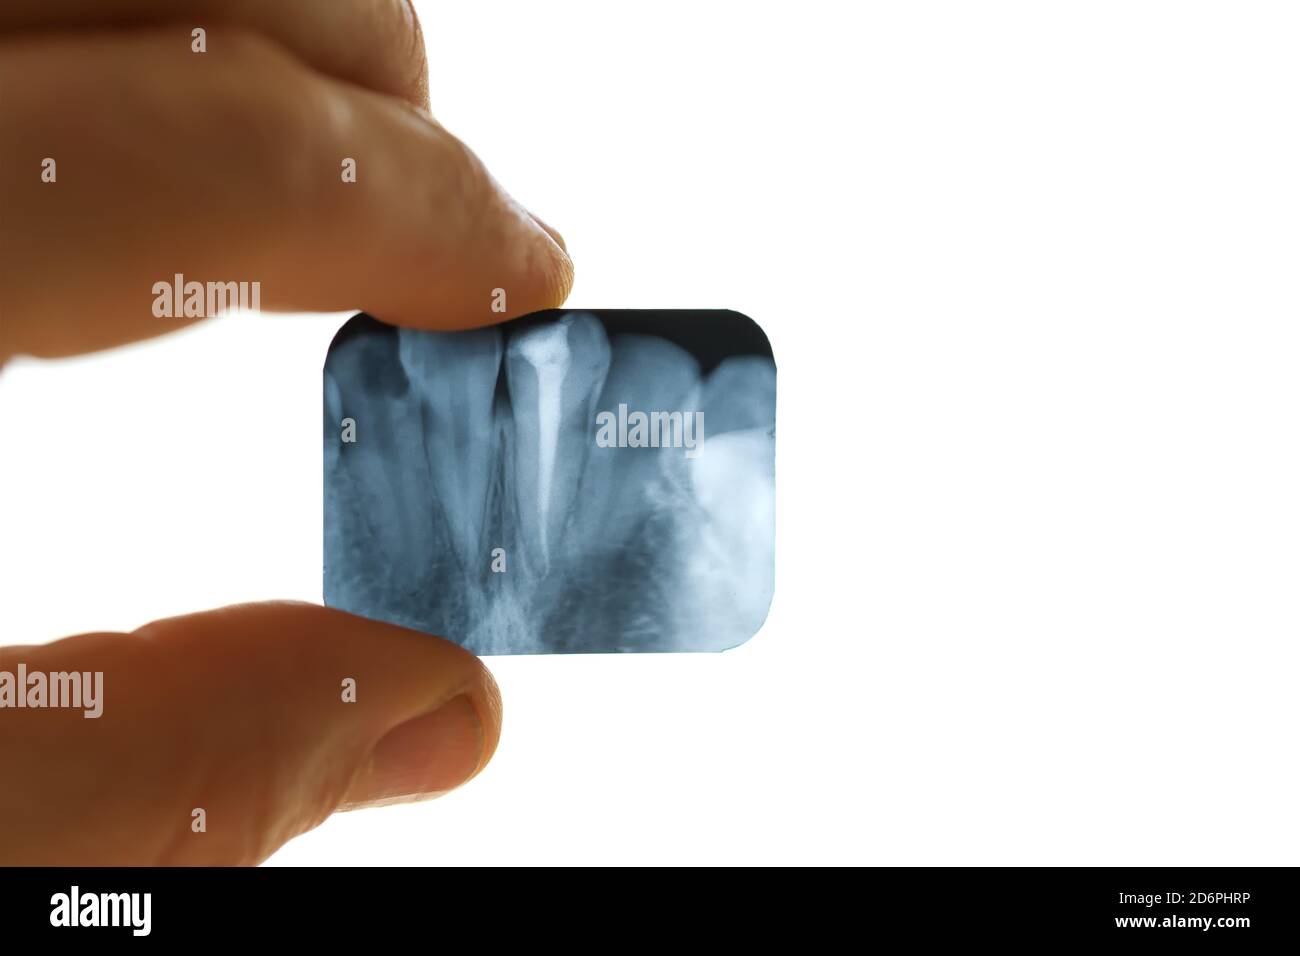 Zahn-Röntgen in der Hand des Menschen Nahaufnahme Stockfoto